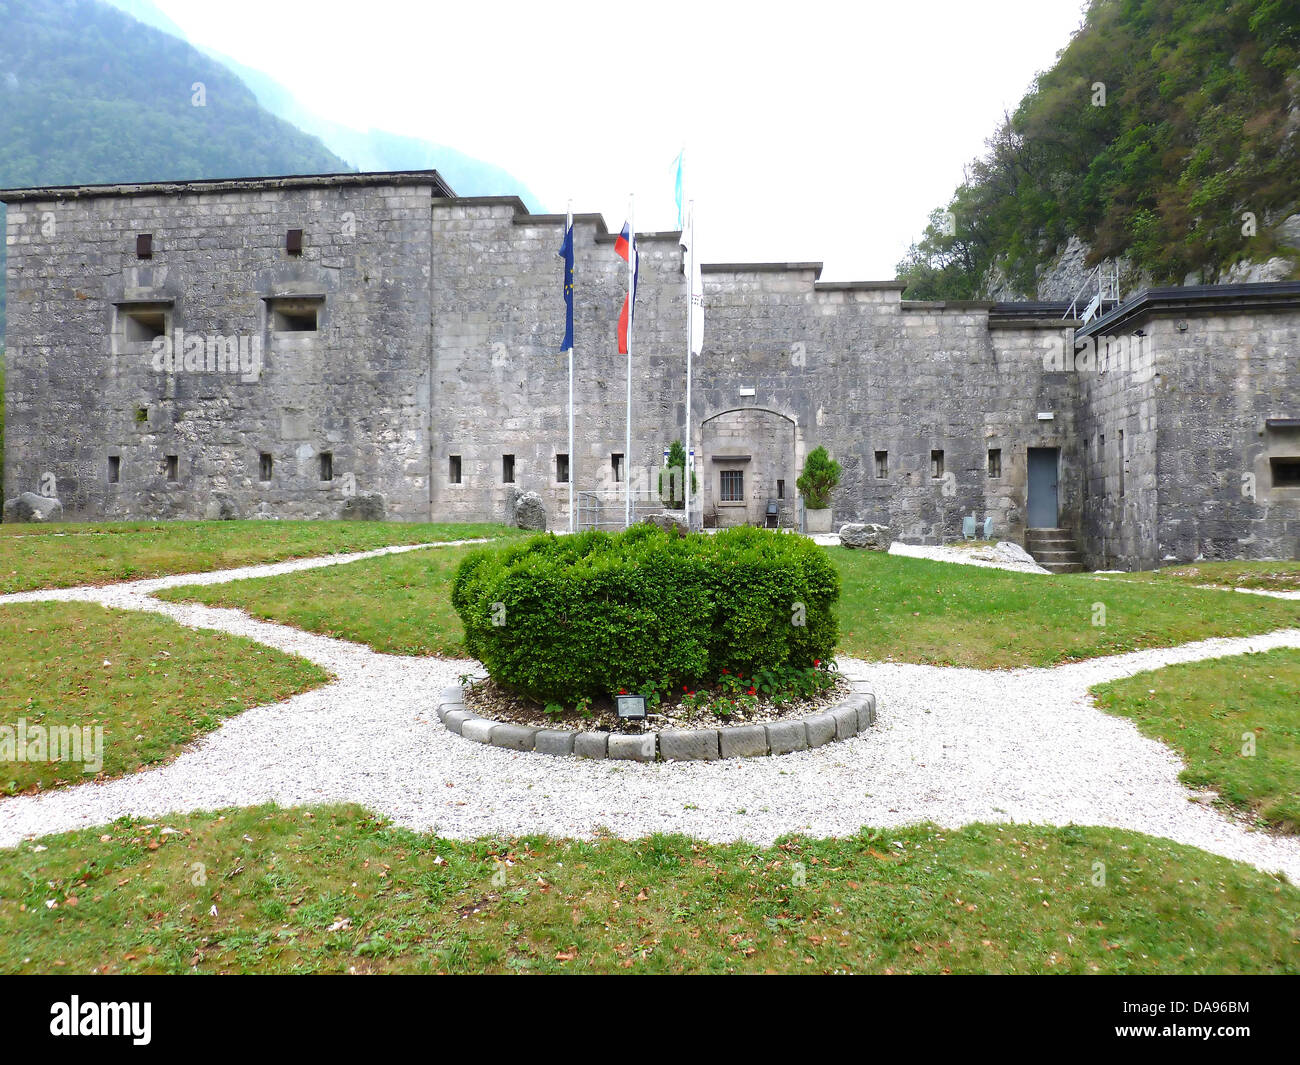 La fortezza di Kluze nel nord della Slovenia. Costruito dall'impero austriaco su una vecchia fortezza veneziana per tenere fuori Napoleone e la fre Foto Stock